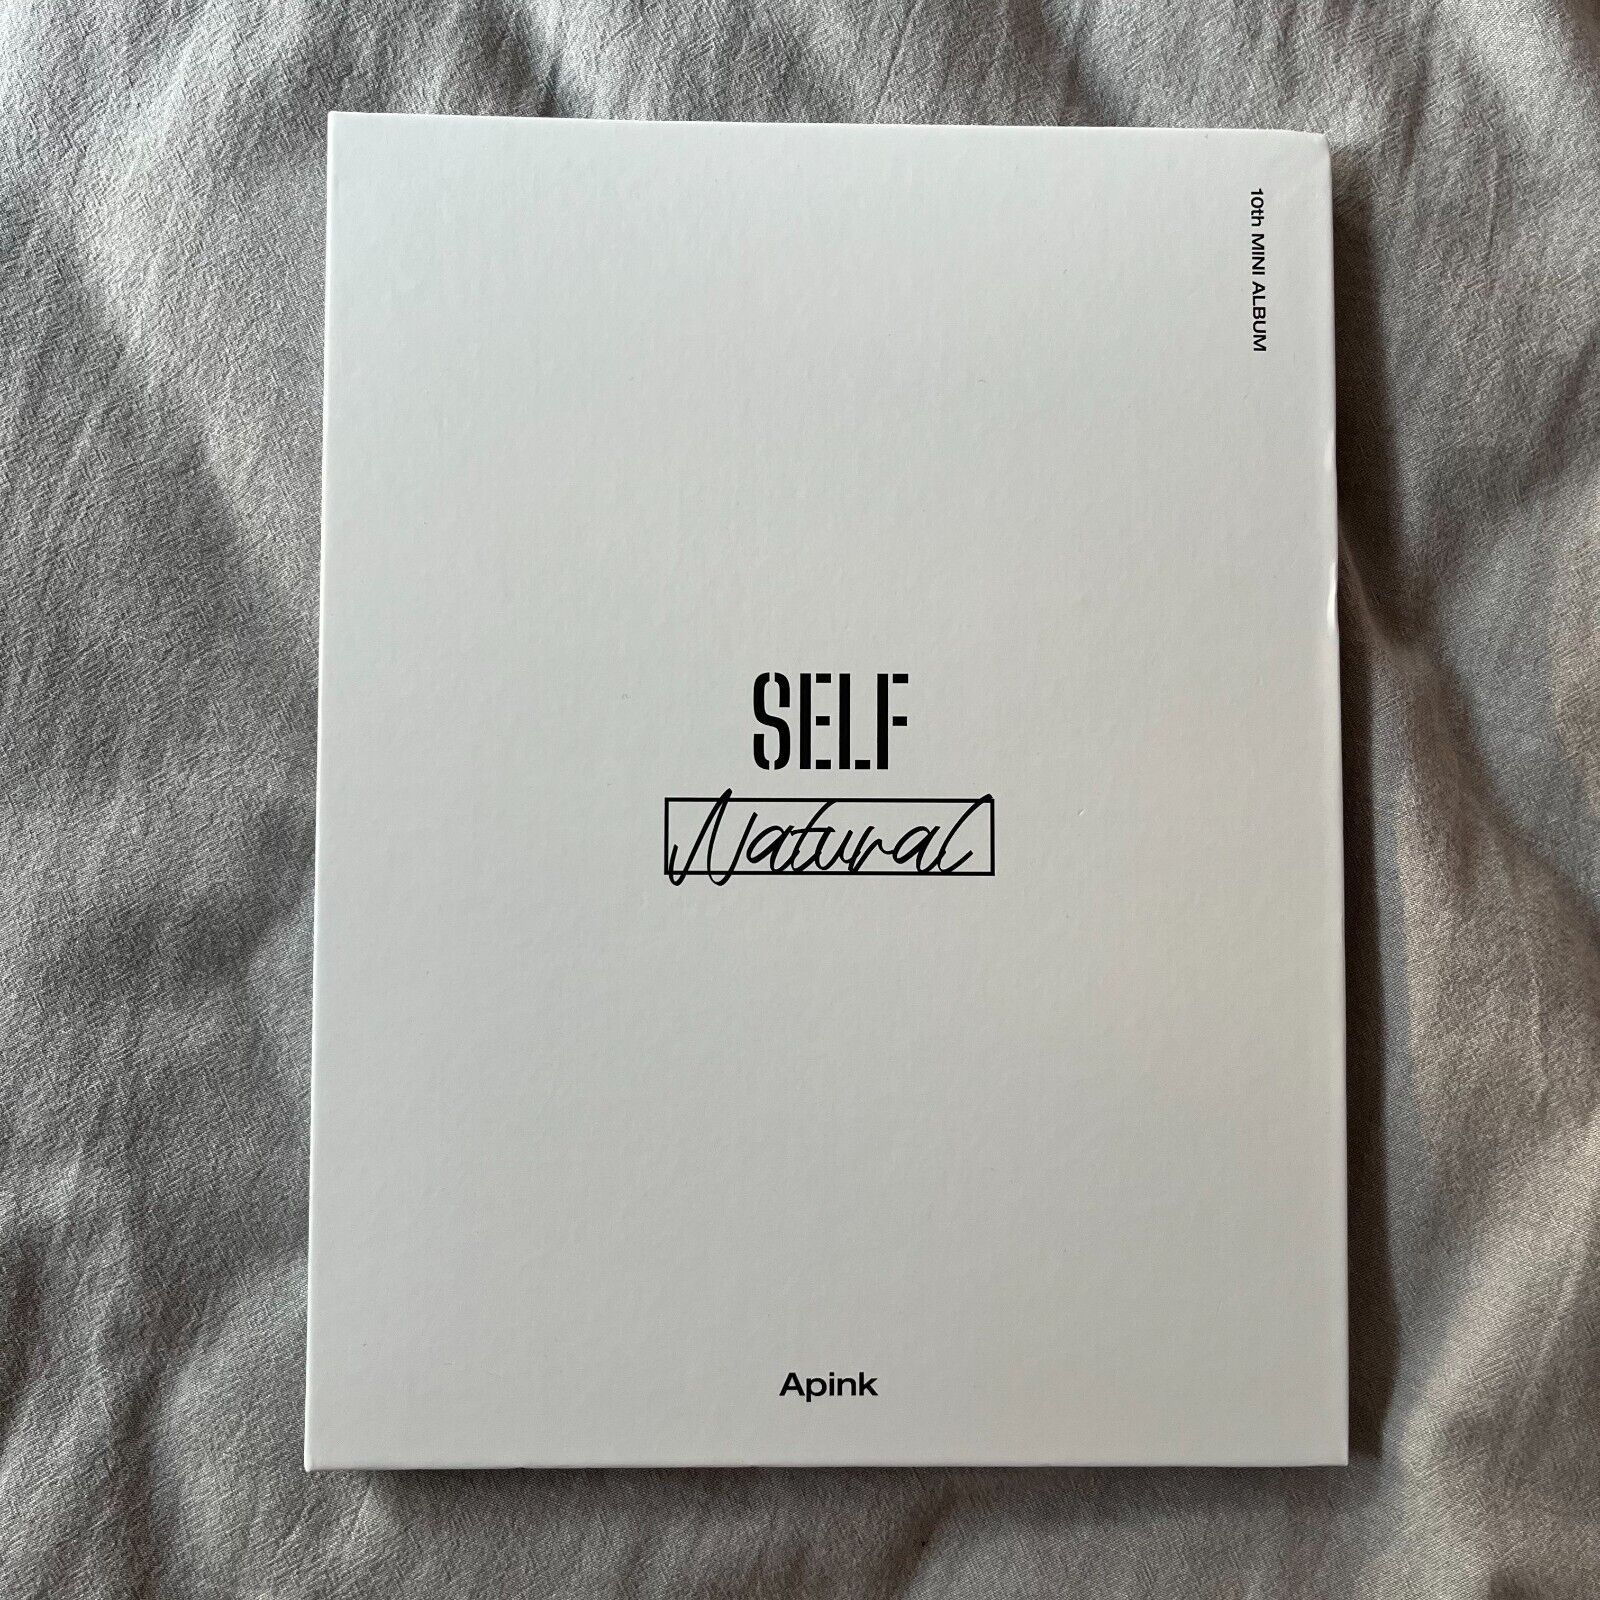 Apink 10th Mini Album "SELF" DND Sealed Album CD+PB+PC